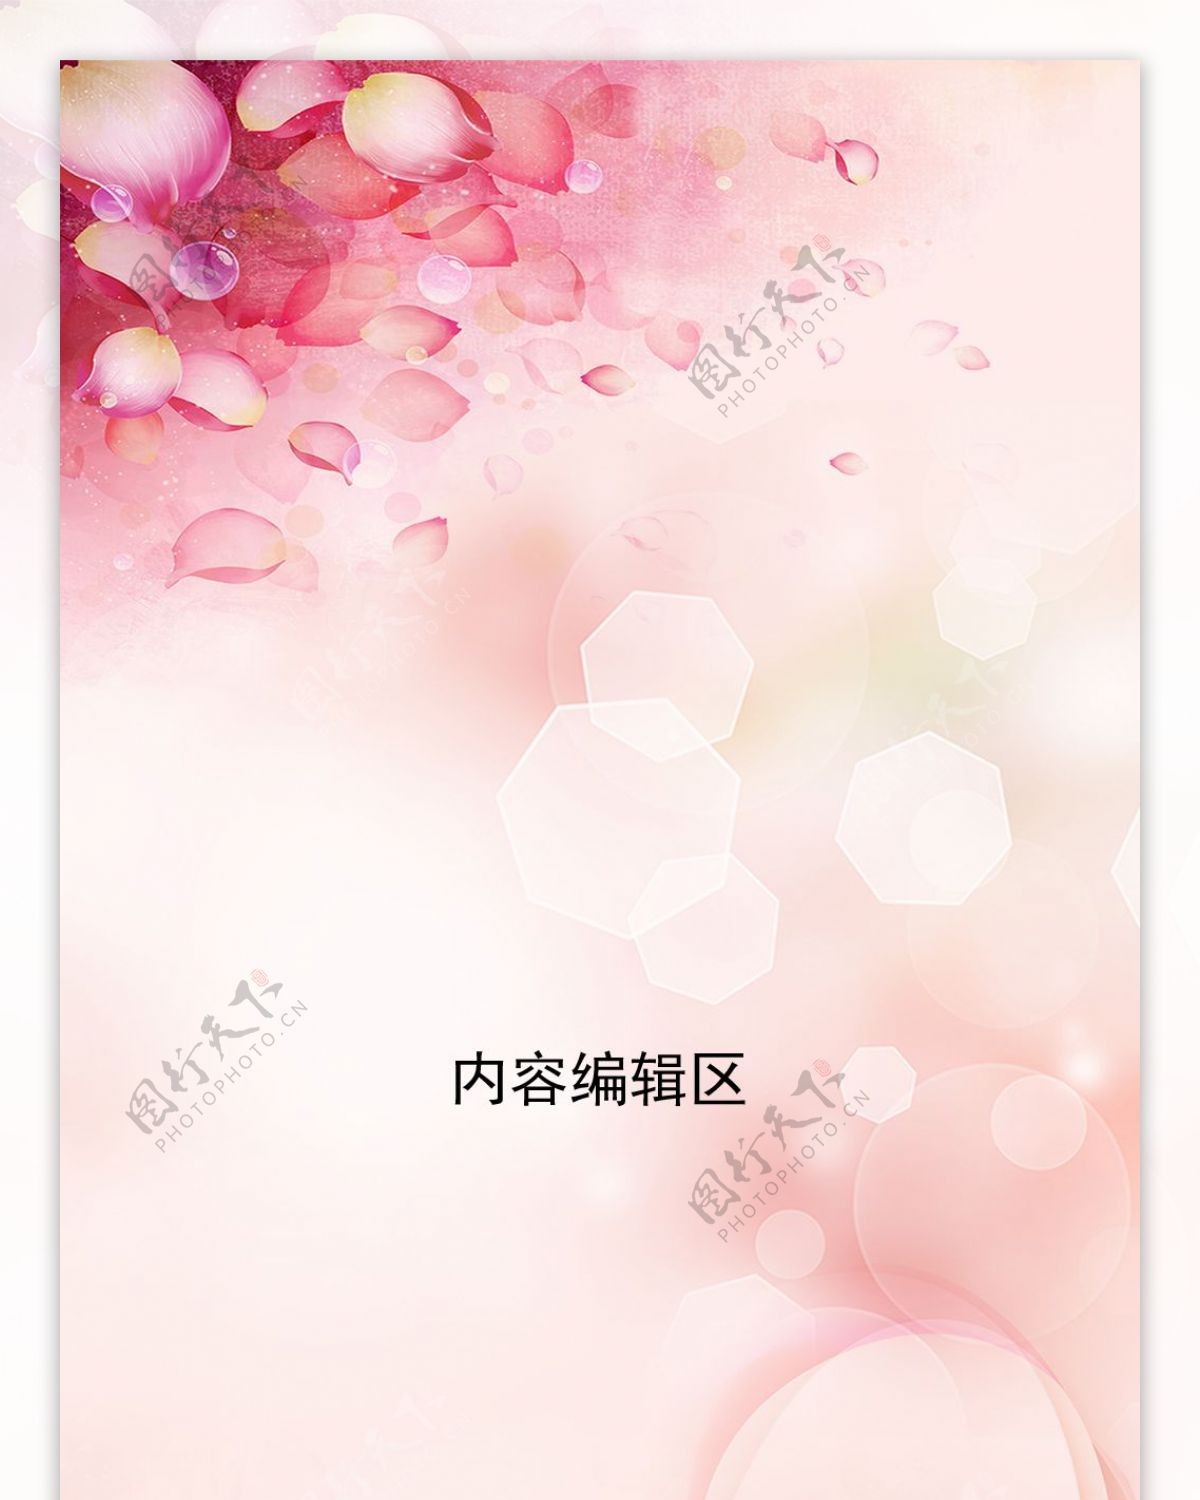 精美粉色花纹展架模板素材画面